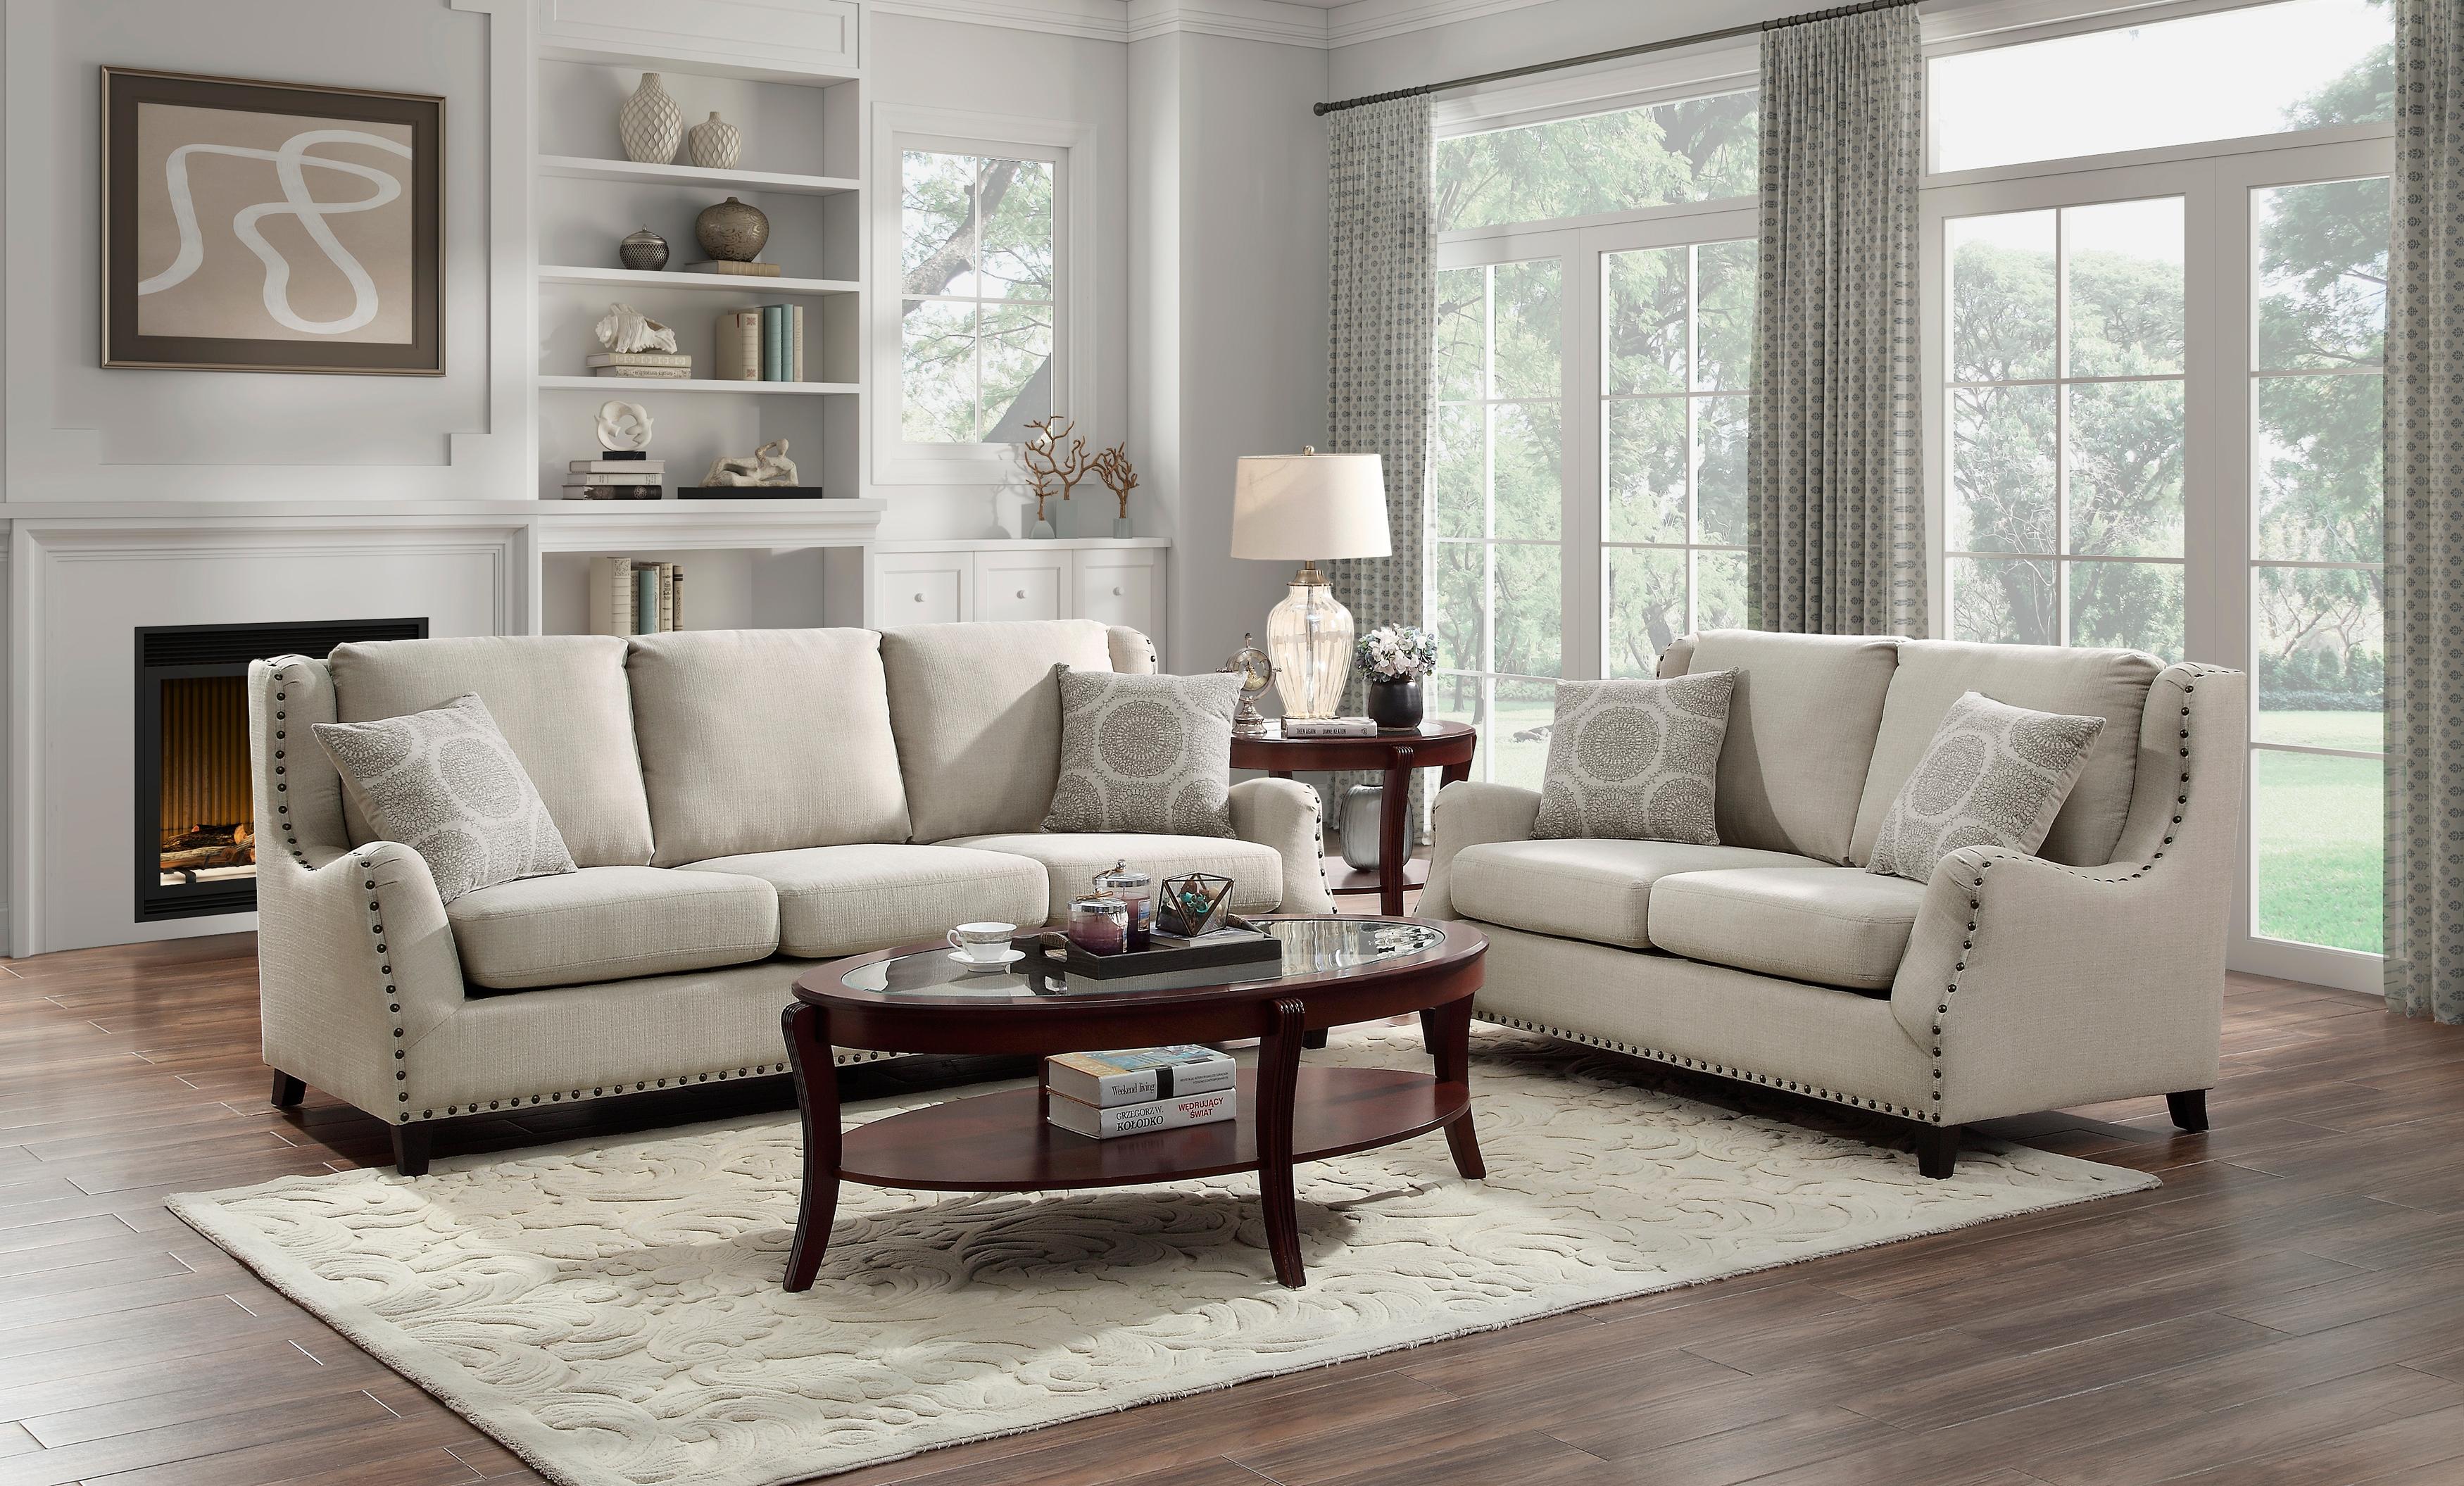 

    
Traditional Beige Textured Living Room Set 2pcs Homelegance 9339BE Halton
